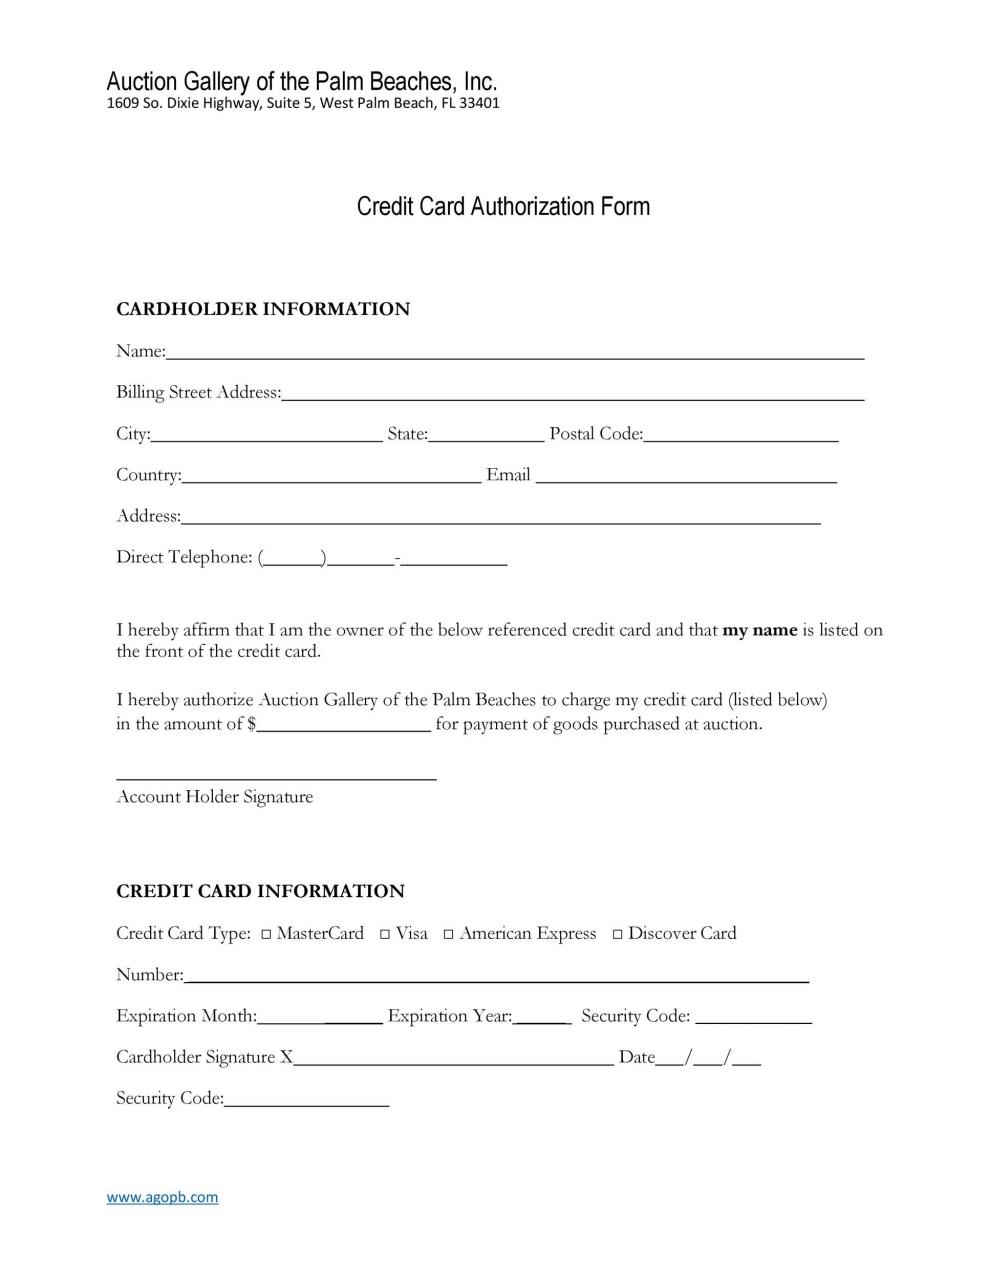 Plantilla de formulario de autorización de tarjeta de crédito gratis 09